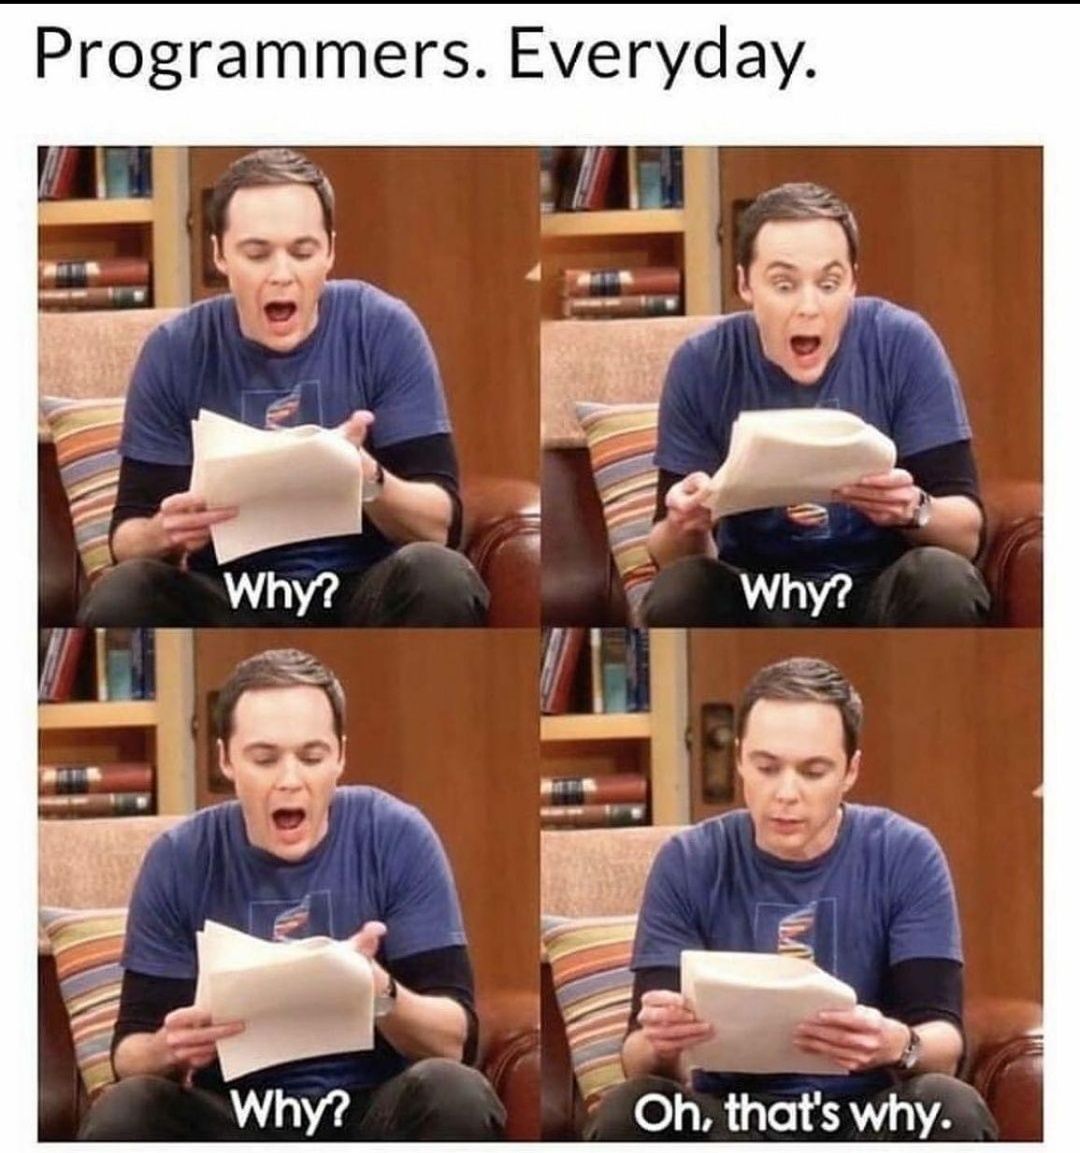 Un peu d'humour : ah, voilà pourquoi 😅 
#programmers #developpementinformatique #incodewetrust #believeit